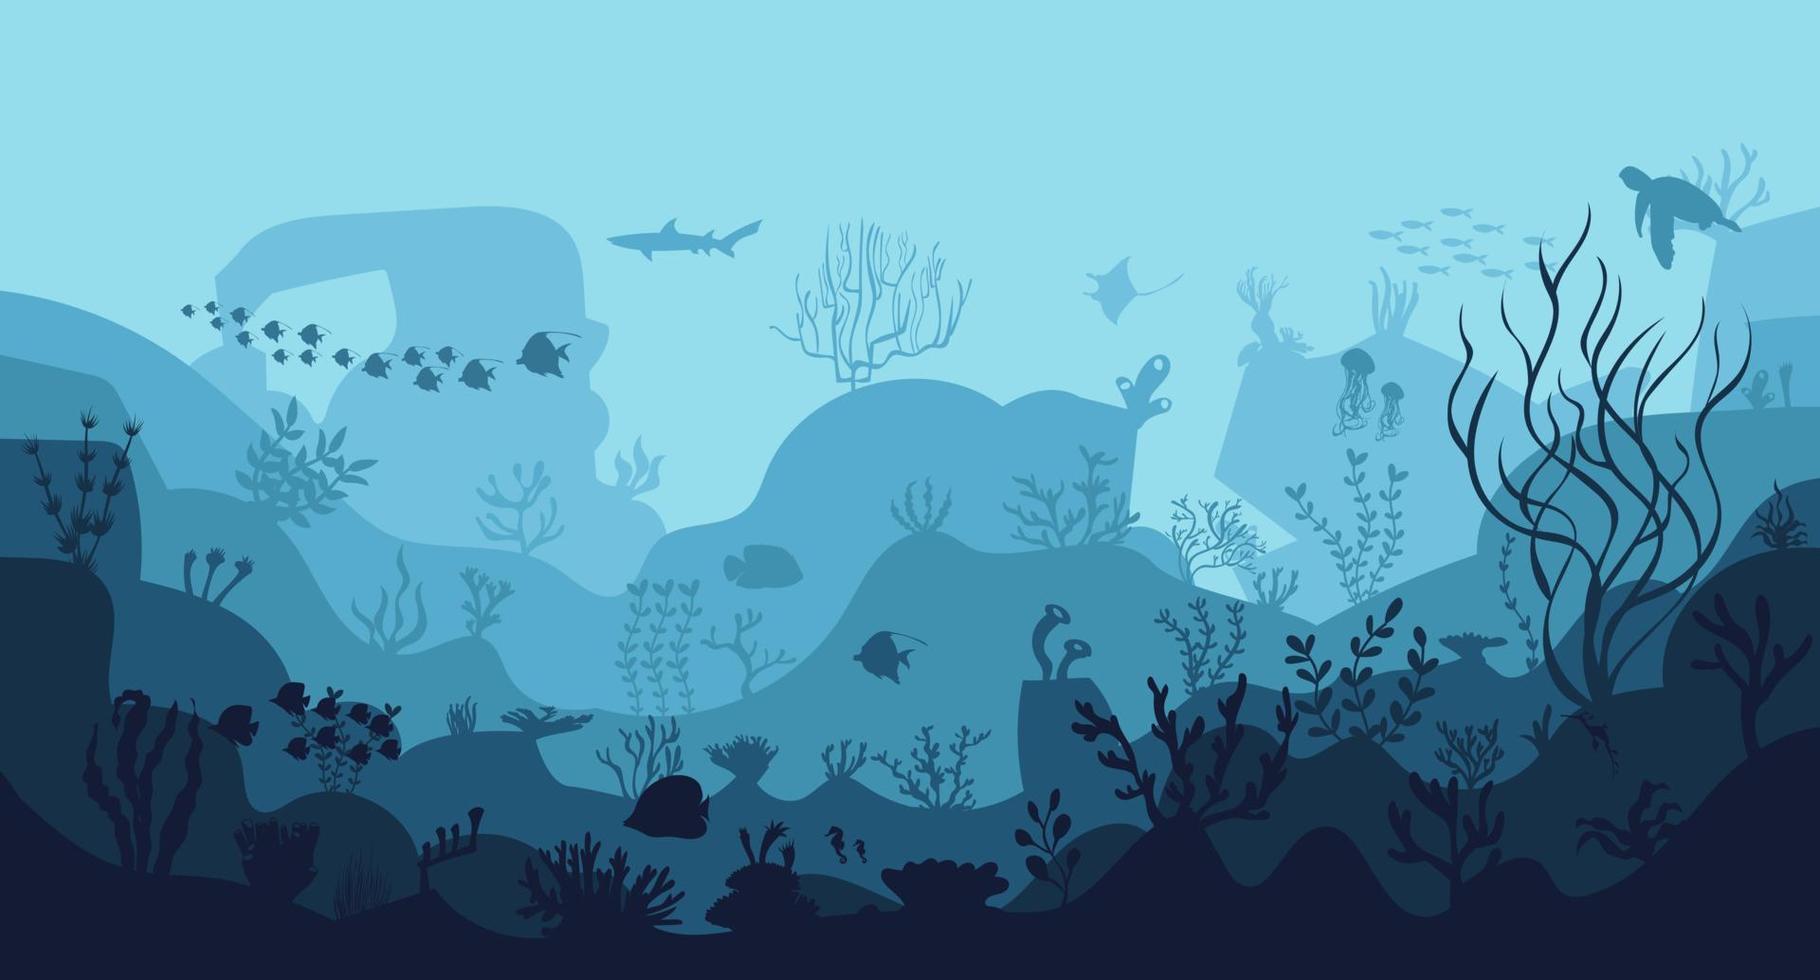 silueta de arrecife de coral con peces y buzos en el fondo azul del mar ilustración vectorial submarina vector